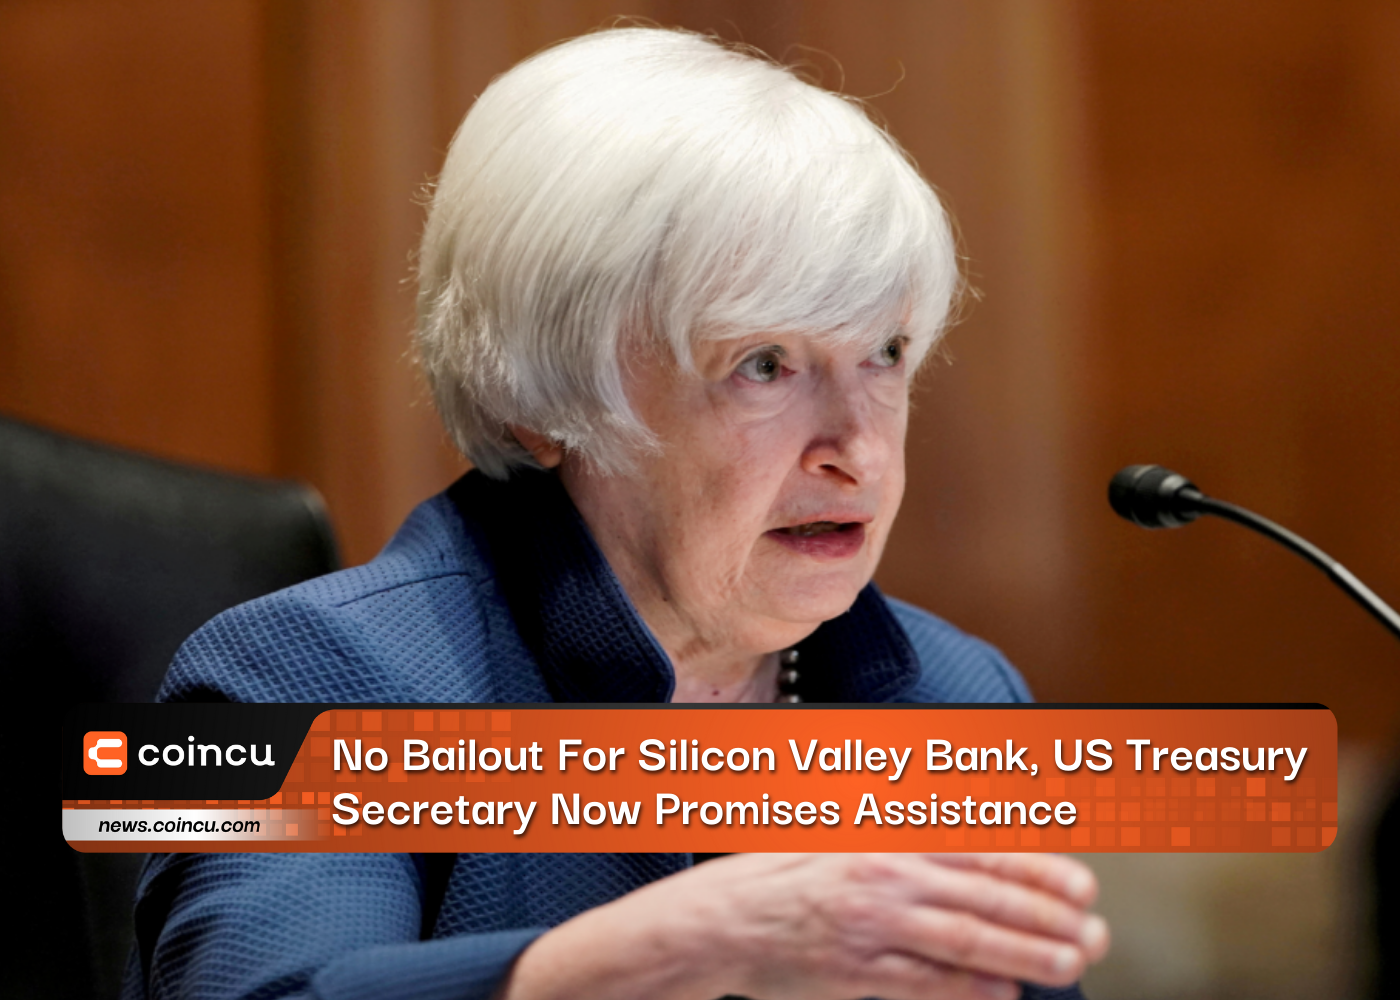 Pas de plan de sauvetage pour la Silicon Valley Bank, le secrétaire au Trésor américain promet désormais son aide